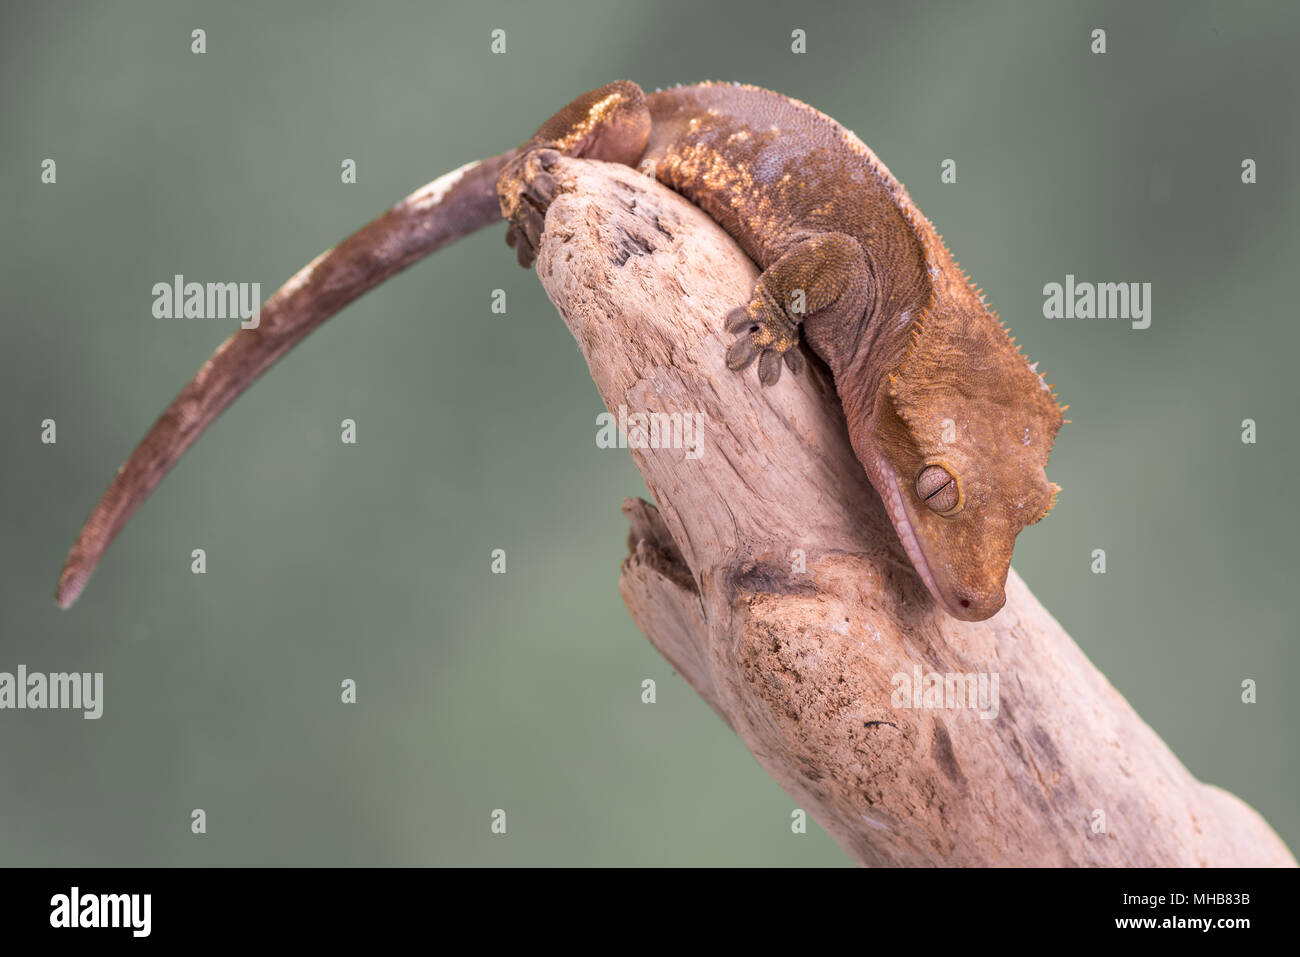 Crested Gecko. Isolati contro un muto sfondo verde. Focus su gli occhi. Camera per copia. Foto Stock